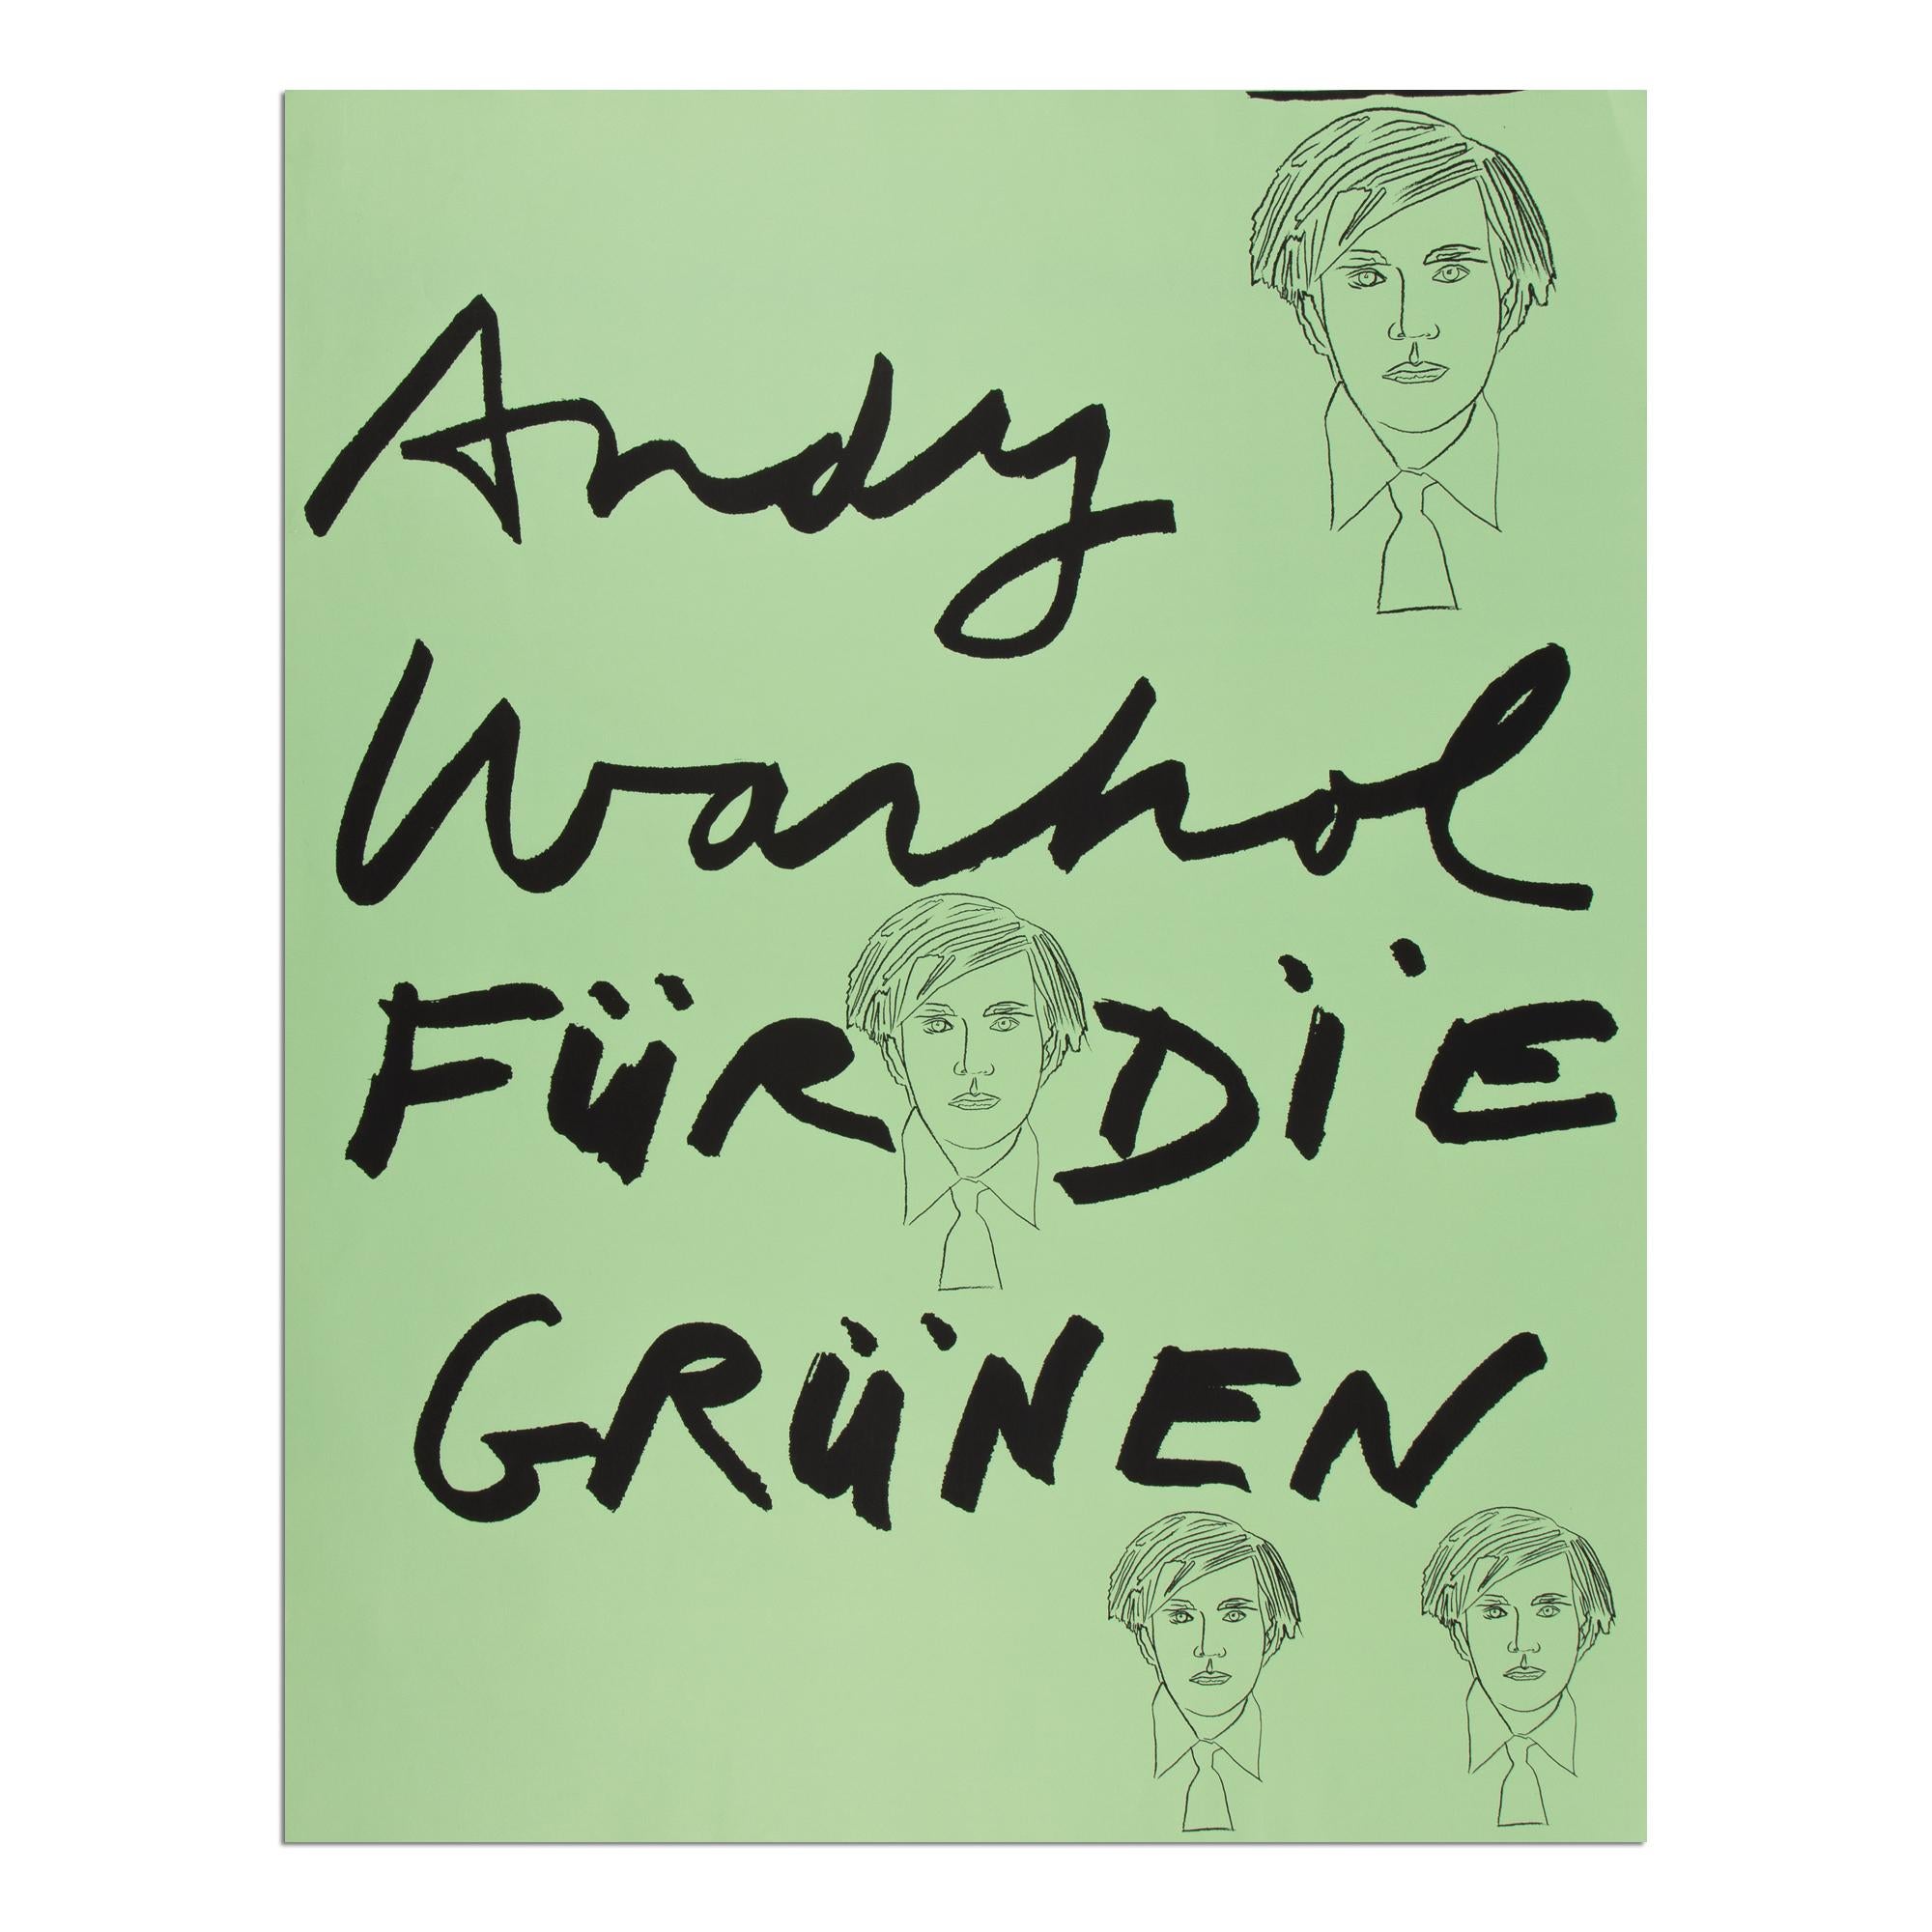 Andy Warhol (1928-1987)
Andy Warhol pour les Verts, 1980
Support : Sérigraphie sur papier (affiche électorale)
Dimensions : 101 x 77 cm
Taille de l'édition inconnue : Non signé, non numéroté
Éditeur : F.I.U. Free International University, Düsseldorf